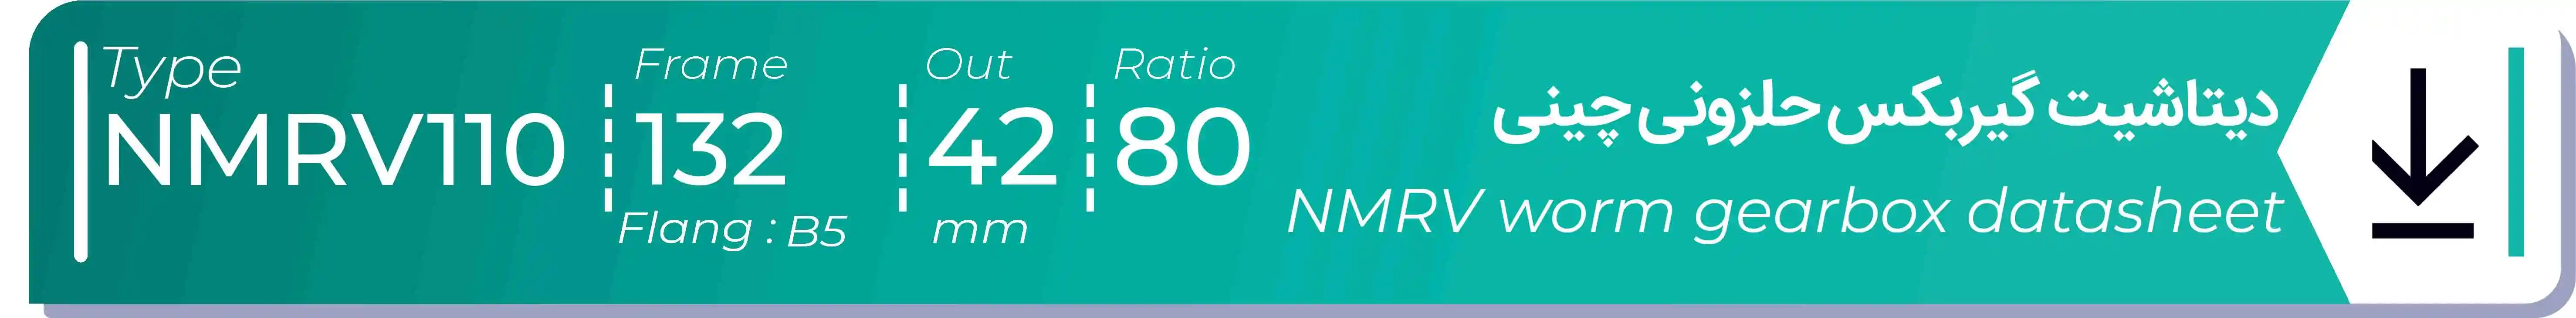  دیتاشیت و مشخصات فنی گیربکس حلزونی چینی   NMRV110  -  با خروجی 42- میلی متر و نسبت80 و فریم 132